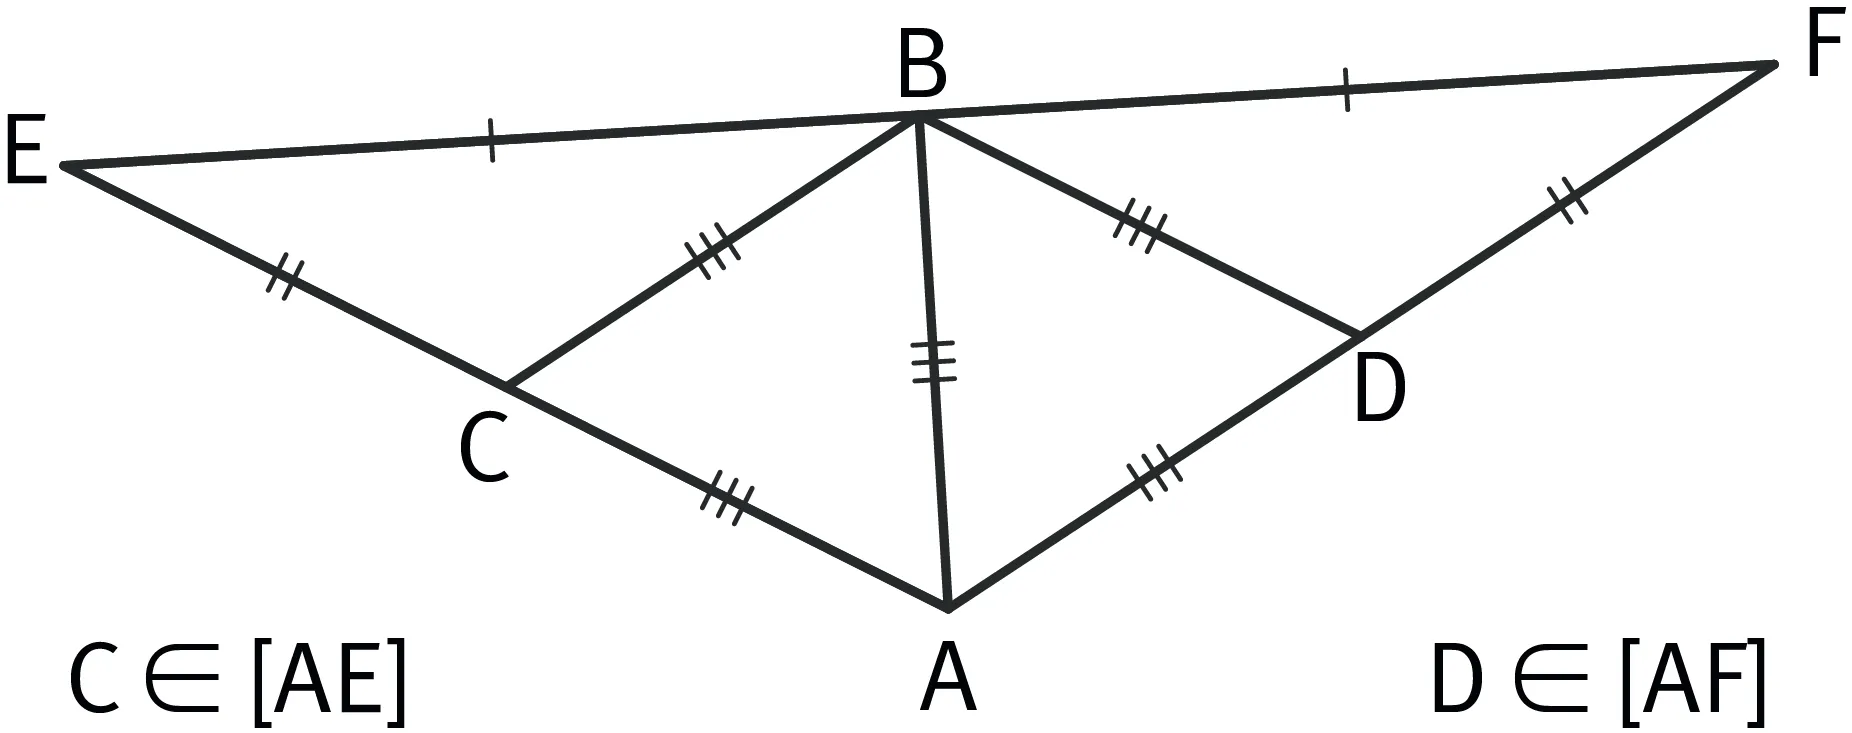 Triangle AEF composé de plusieurs triangle, EBC, BCA, CBD, DBE, 